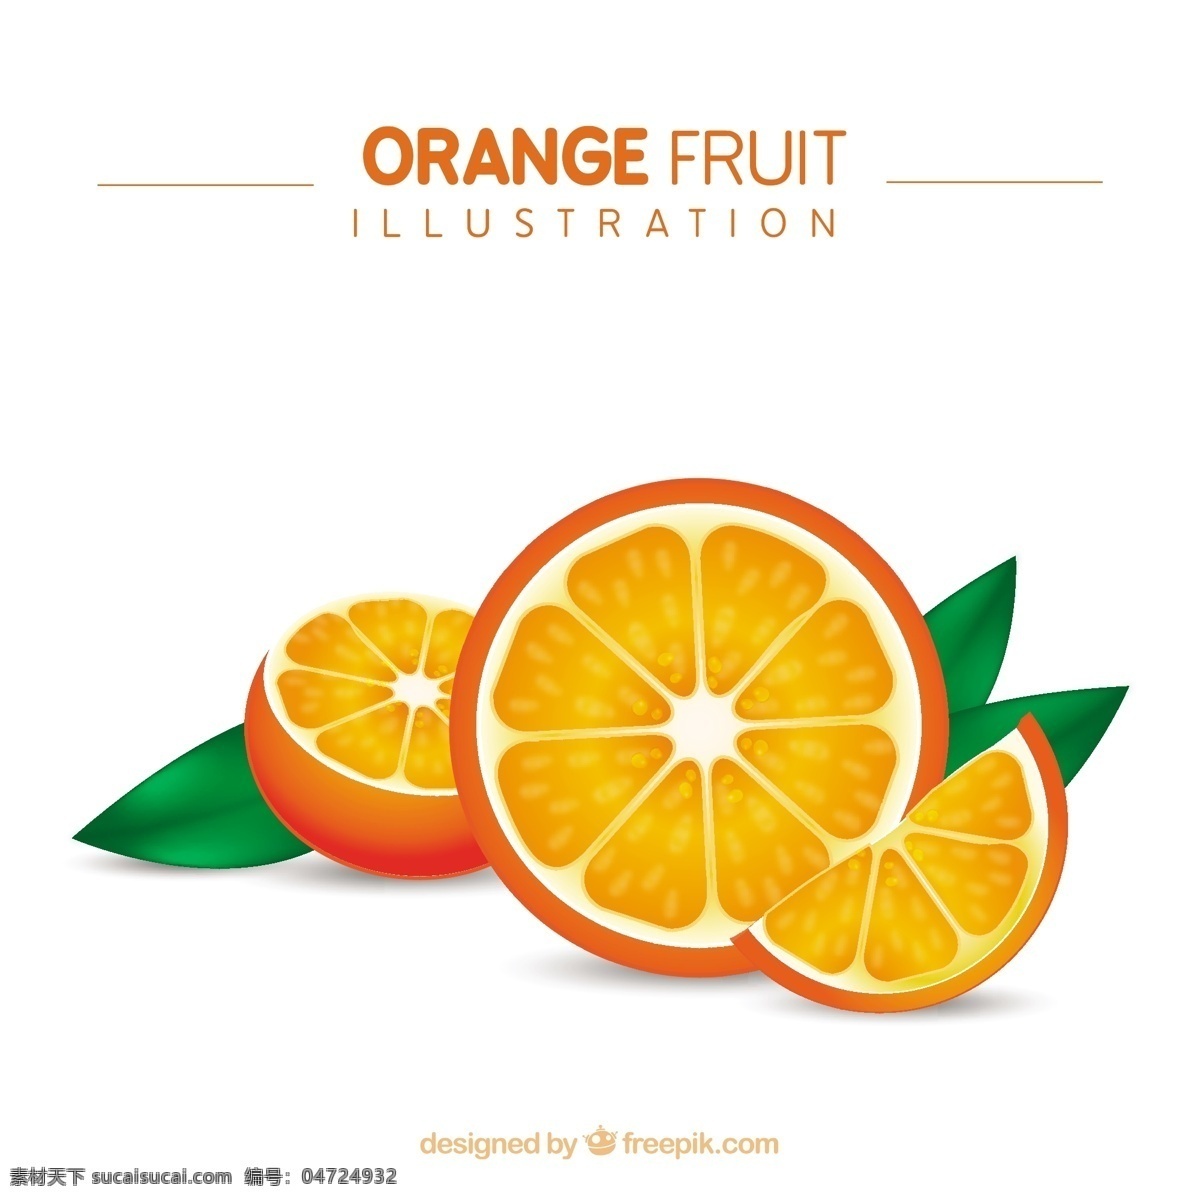 橙色 水果 插图 食品 橘子 健康 健康食品 有机食品 白色